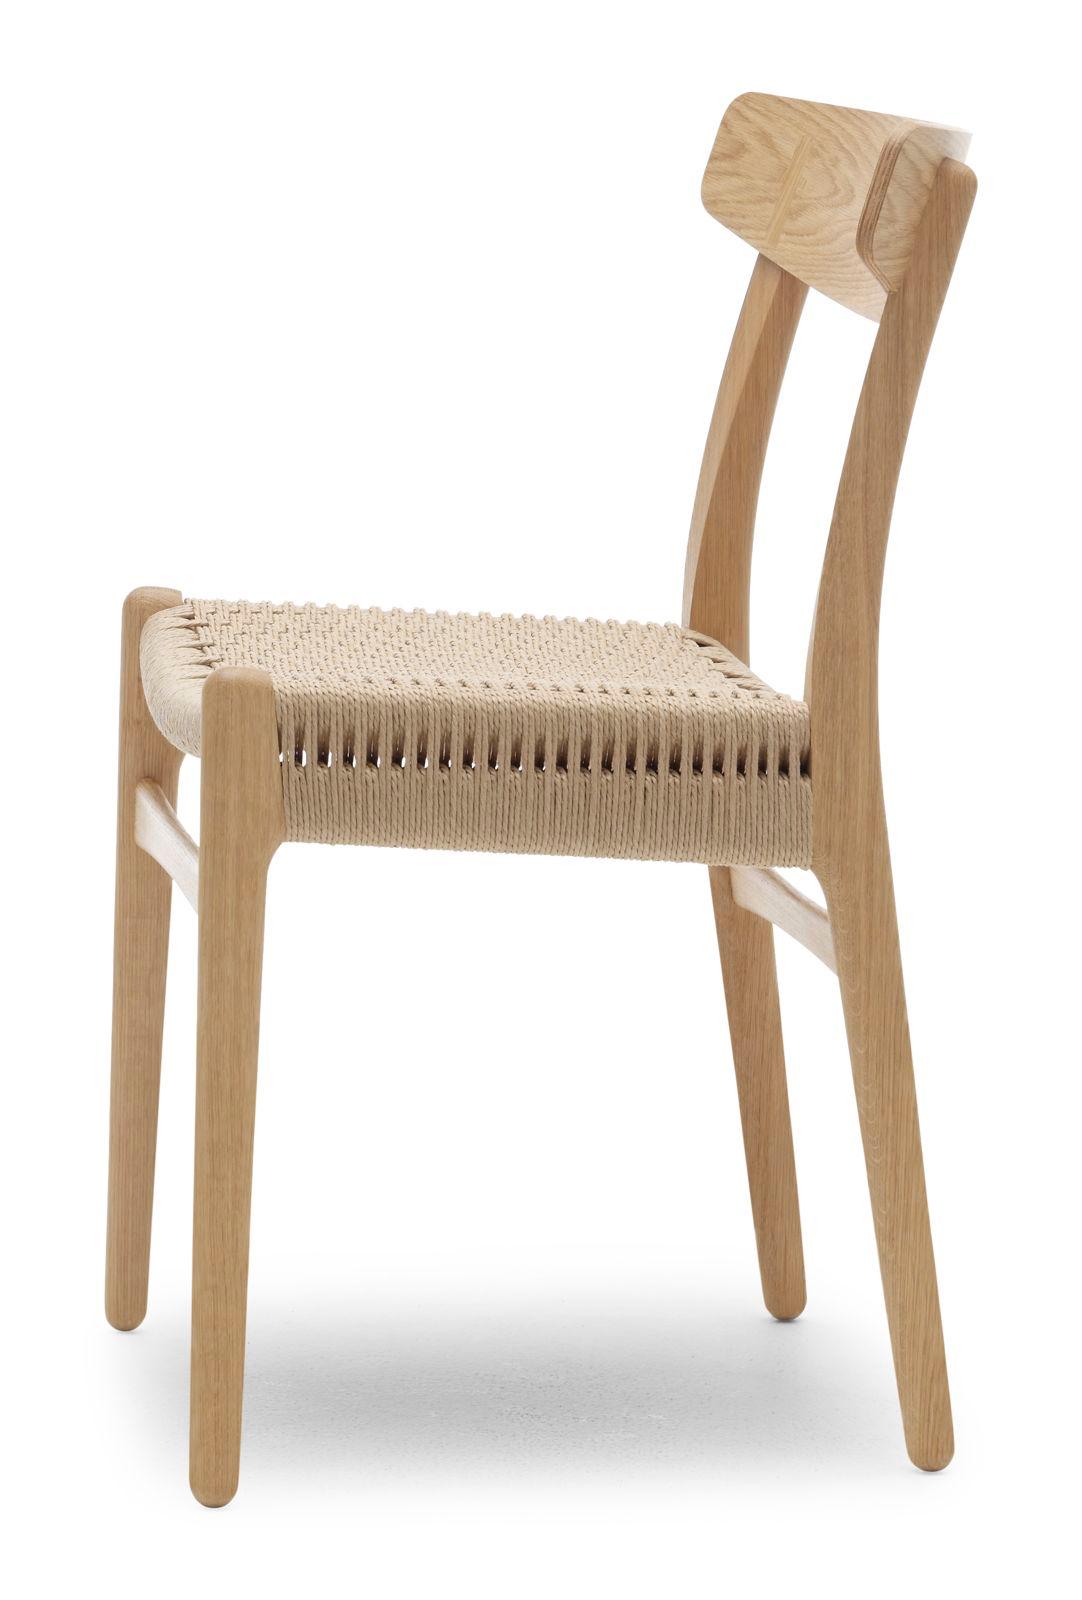 Présentée pour la première fois en 1950, la chaise de salle à manger CH23 présente des contours nets et organiques ainsi qu'un style raffiné, démontrant l'approche unique du jeune Hans J. Wegner en matière de design et sa perspicacité en matière